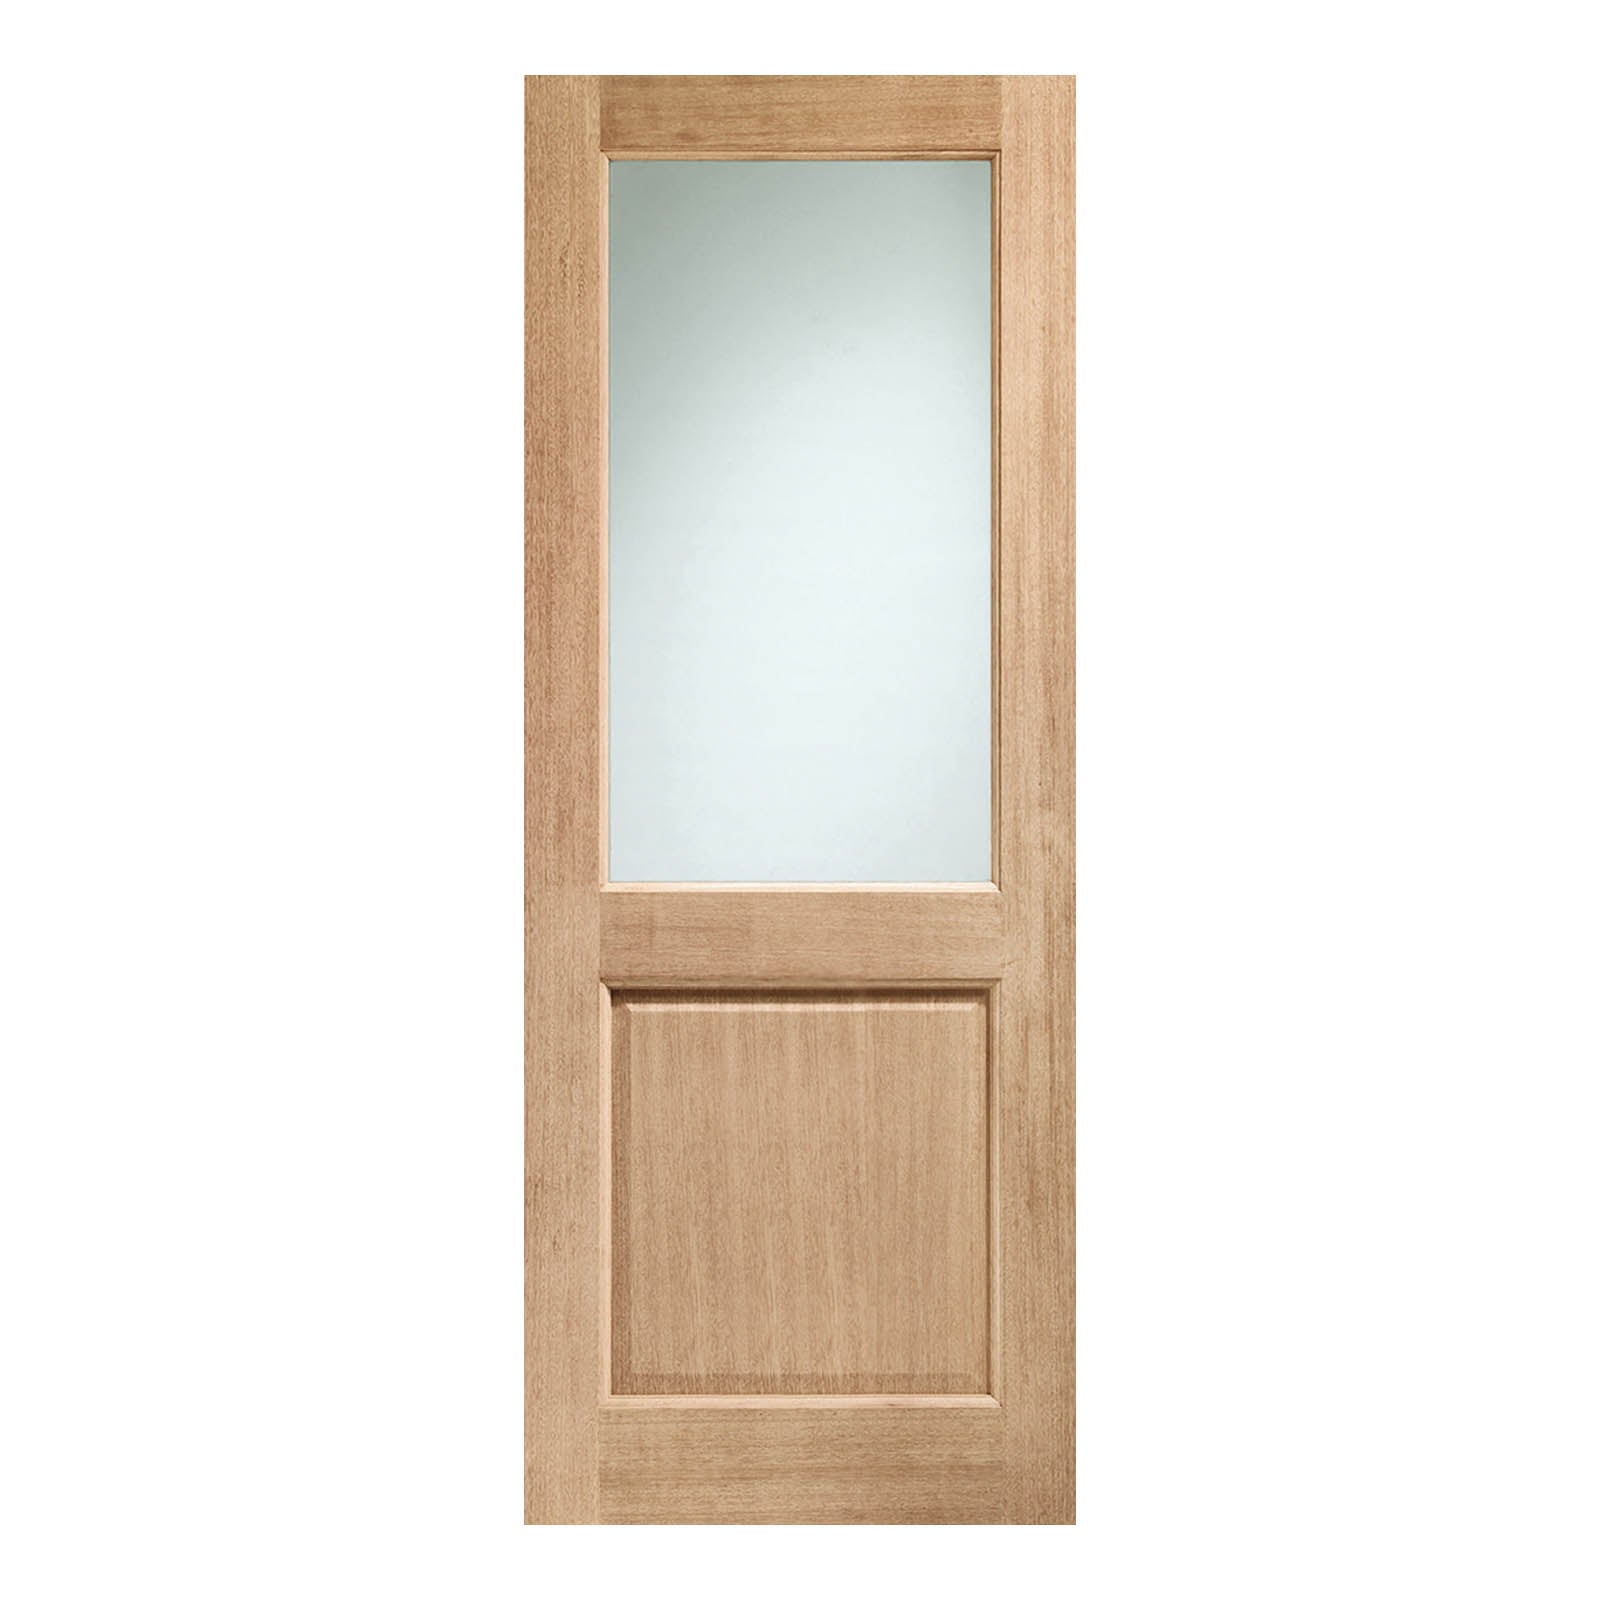 External Oak 2XG Dowelled Door with Double Glazed Clear Glass